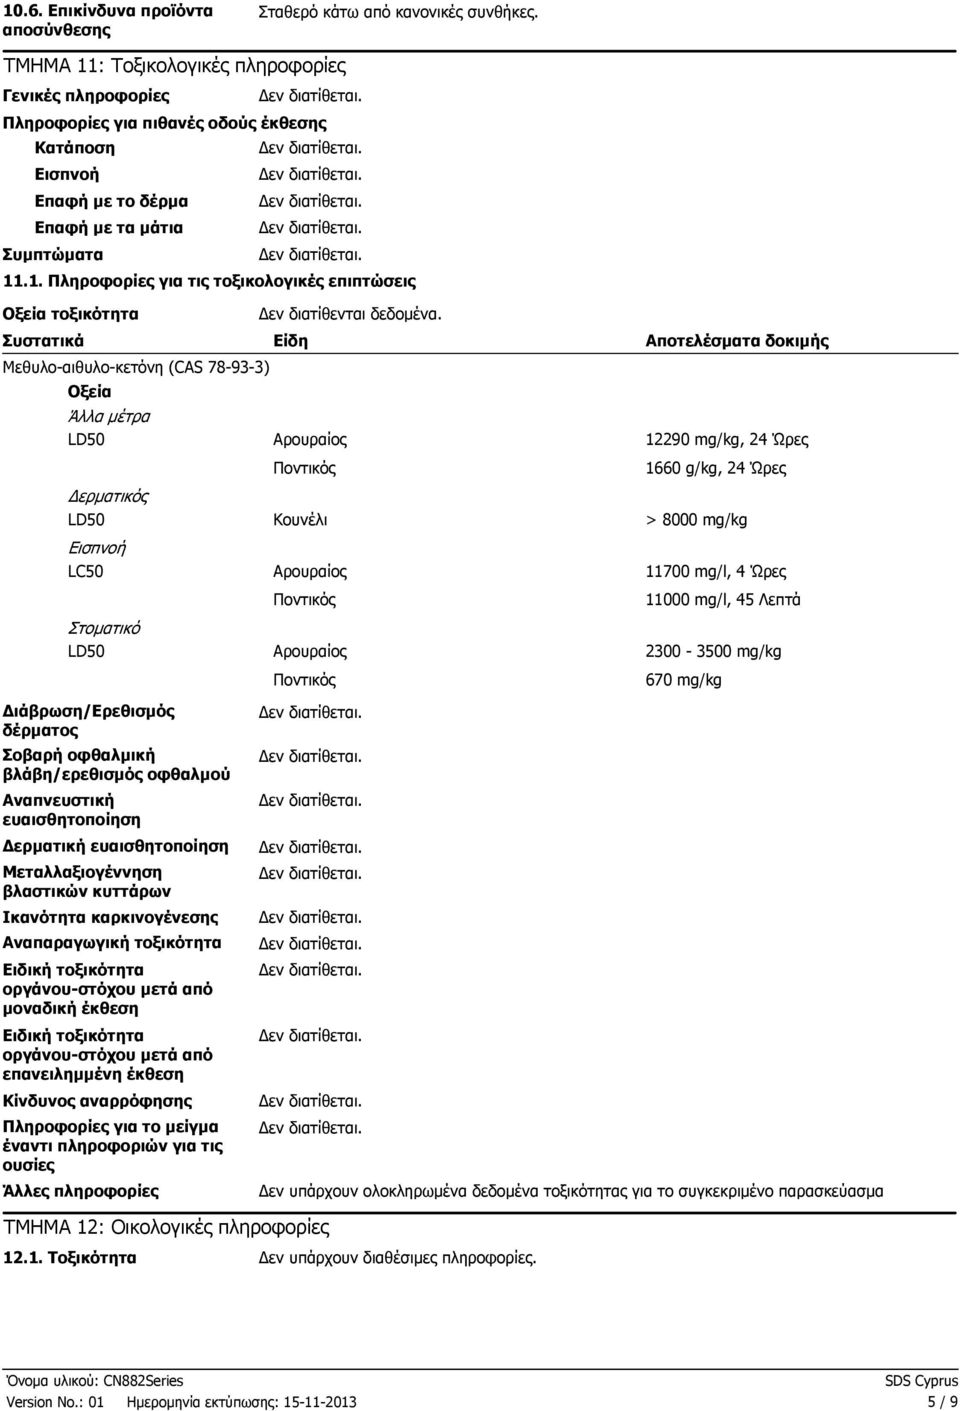 Συστατικά Είδη Μεθυλοαιθυλοκετόνη (CAS 78933) Οξεία Άλλα µέτρα LD50 Αρουραίος Ποντικός Αποτελέσµατα δοκιµής 12290 mg/kg, 24 Ώρες 1660 g/kg, 24 Ώρες ερµατικός LD50 Εισπνοή LC50 Στοµατικό LD50 Κουνέλι